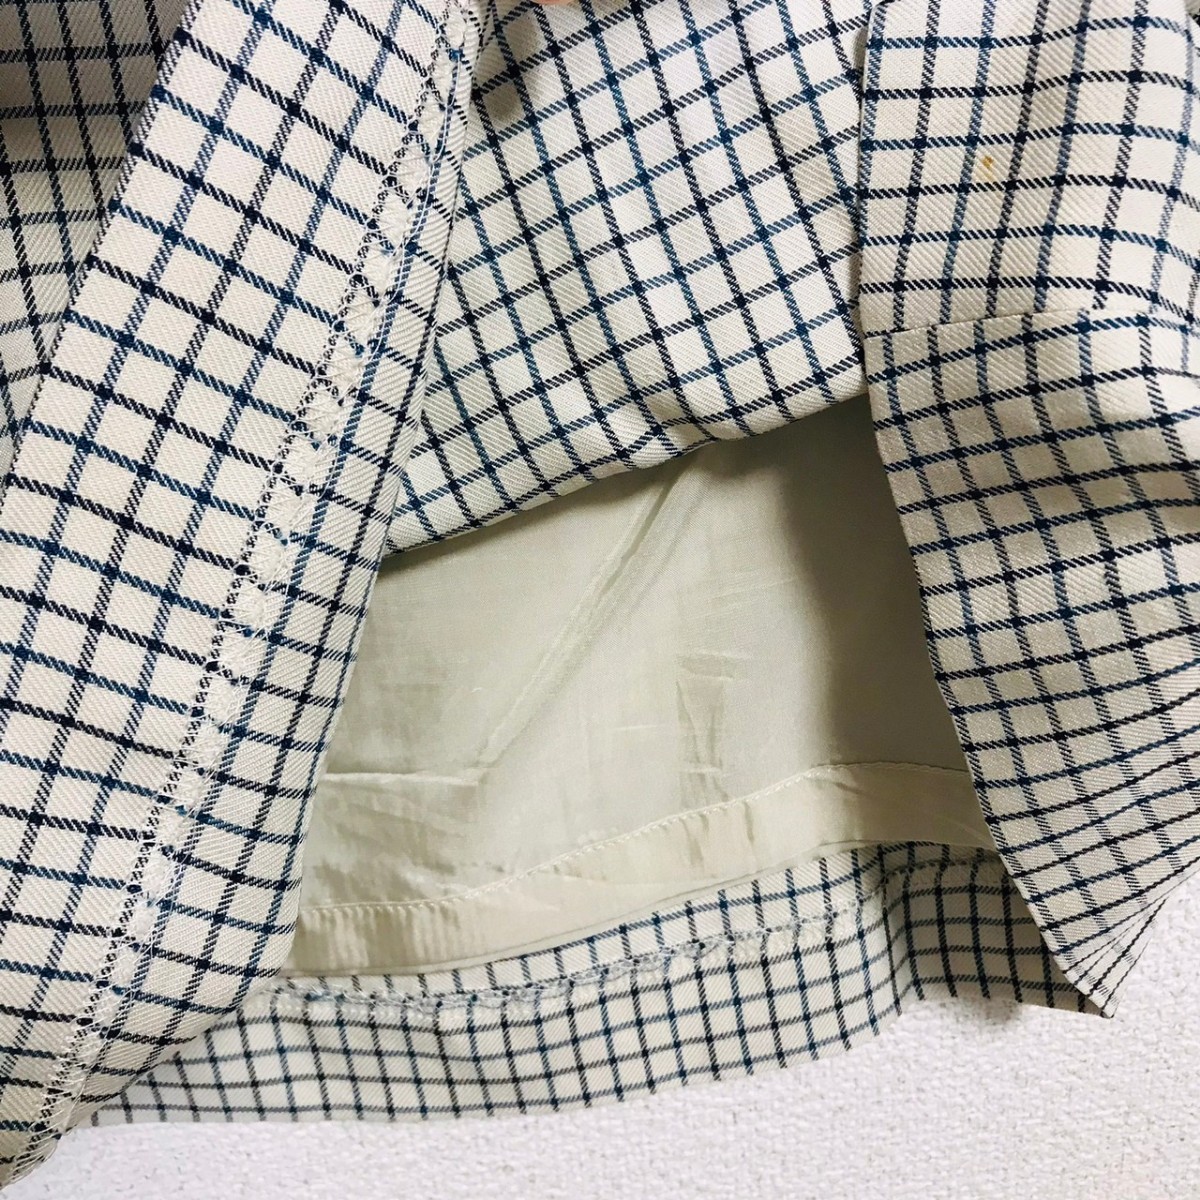 H3797dL  сделано в Японии  4℃ ...  размер  M  установка   костюм   юбочный костюм   белый × голубой ... цвет  пиджак   mini  юбка  